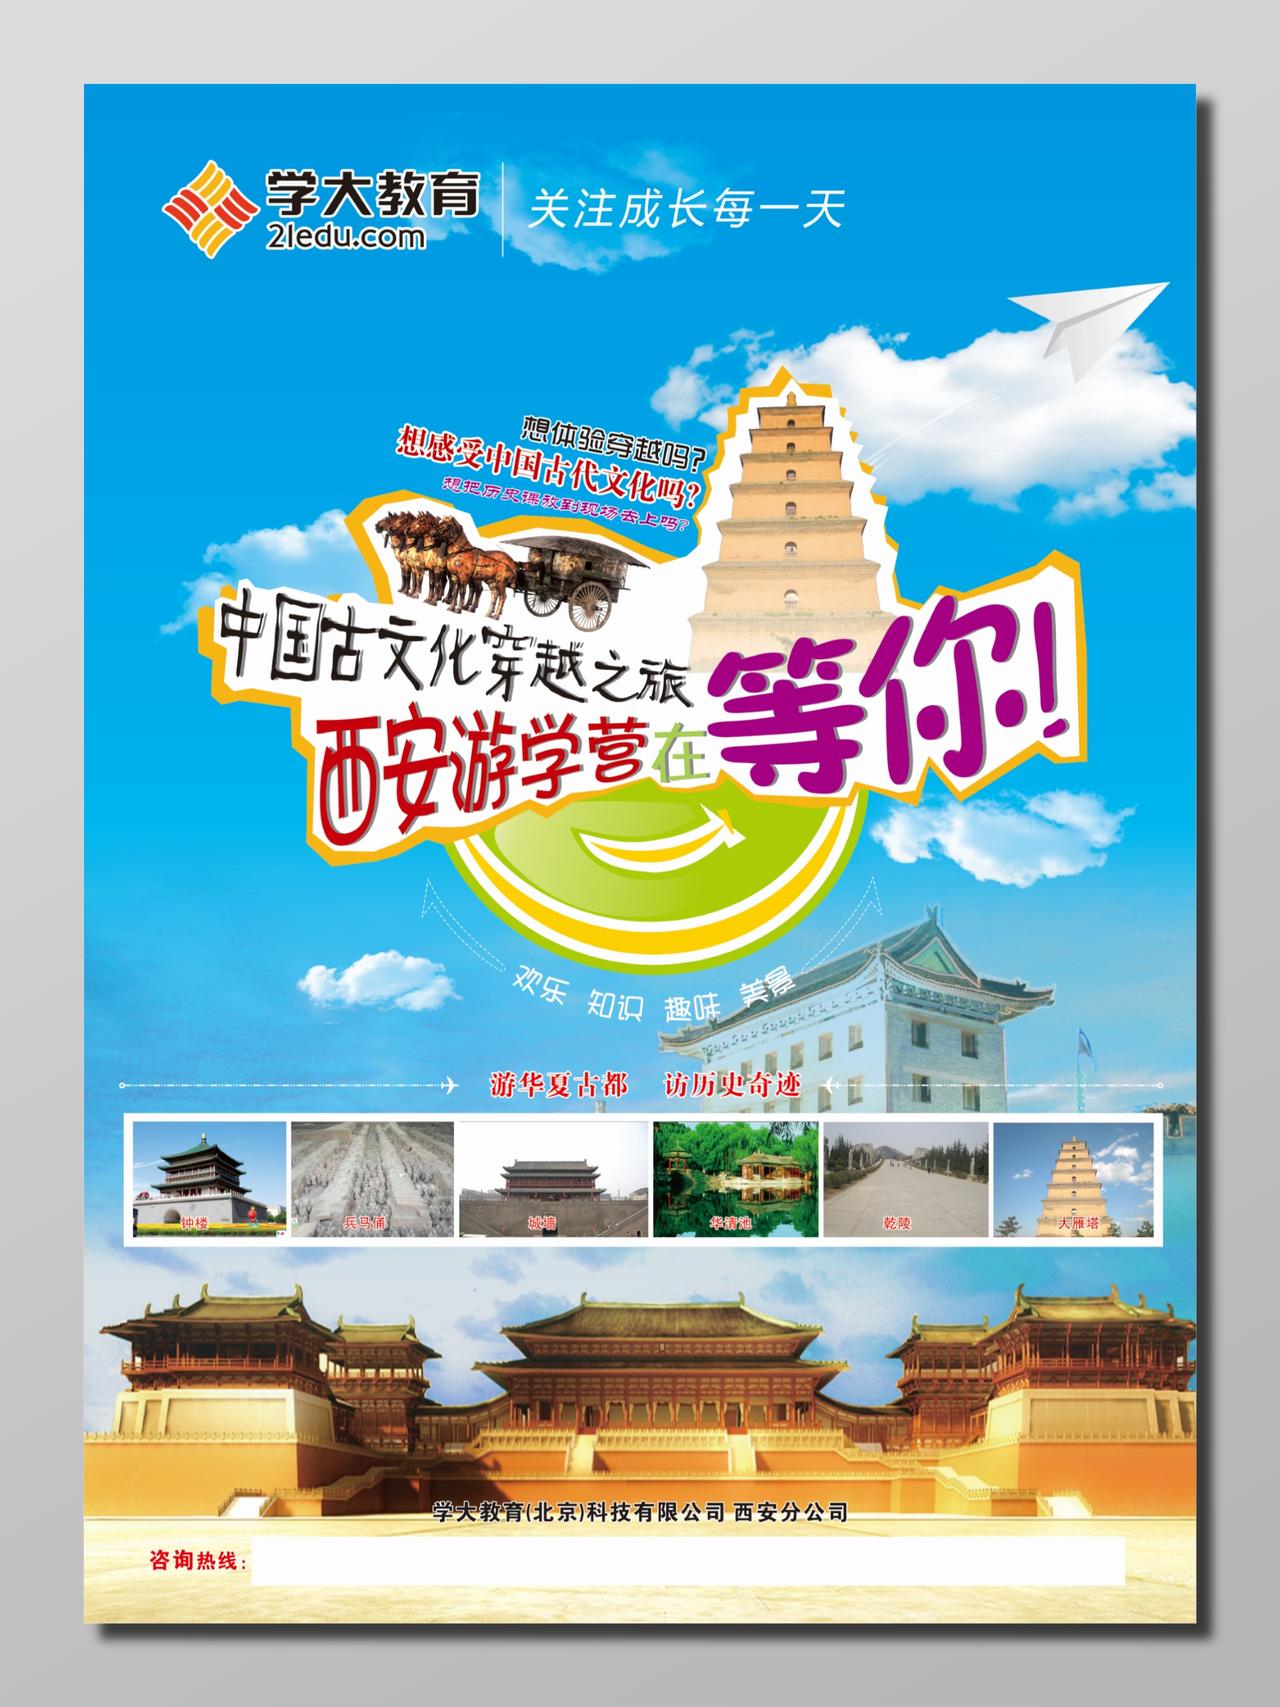 西安旅游游学营教育机构游学旅游宣传海报